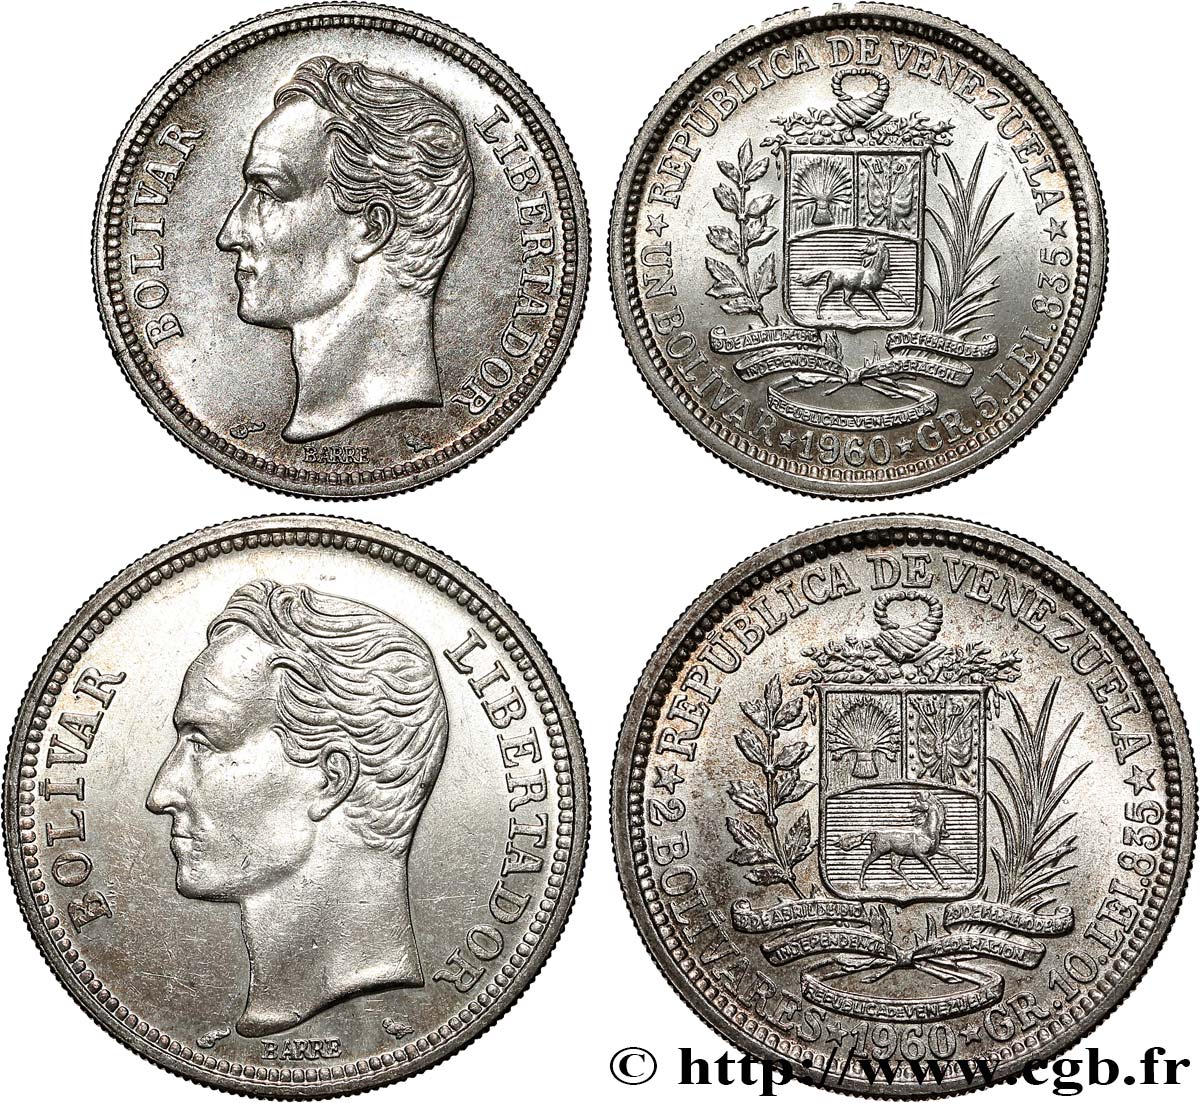 VENEZUELA Lot 1 et 2 Bolivares 1960 Paris EBC 